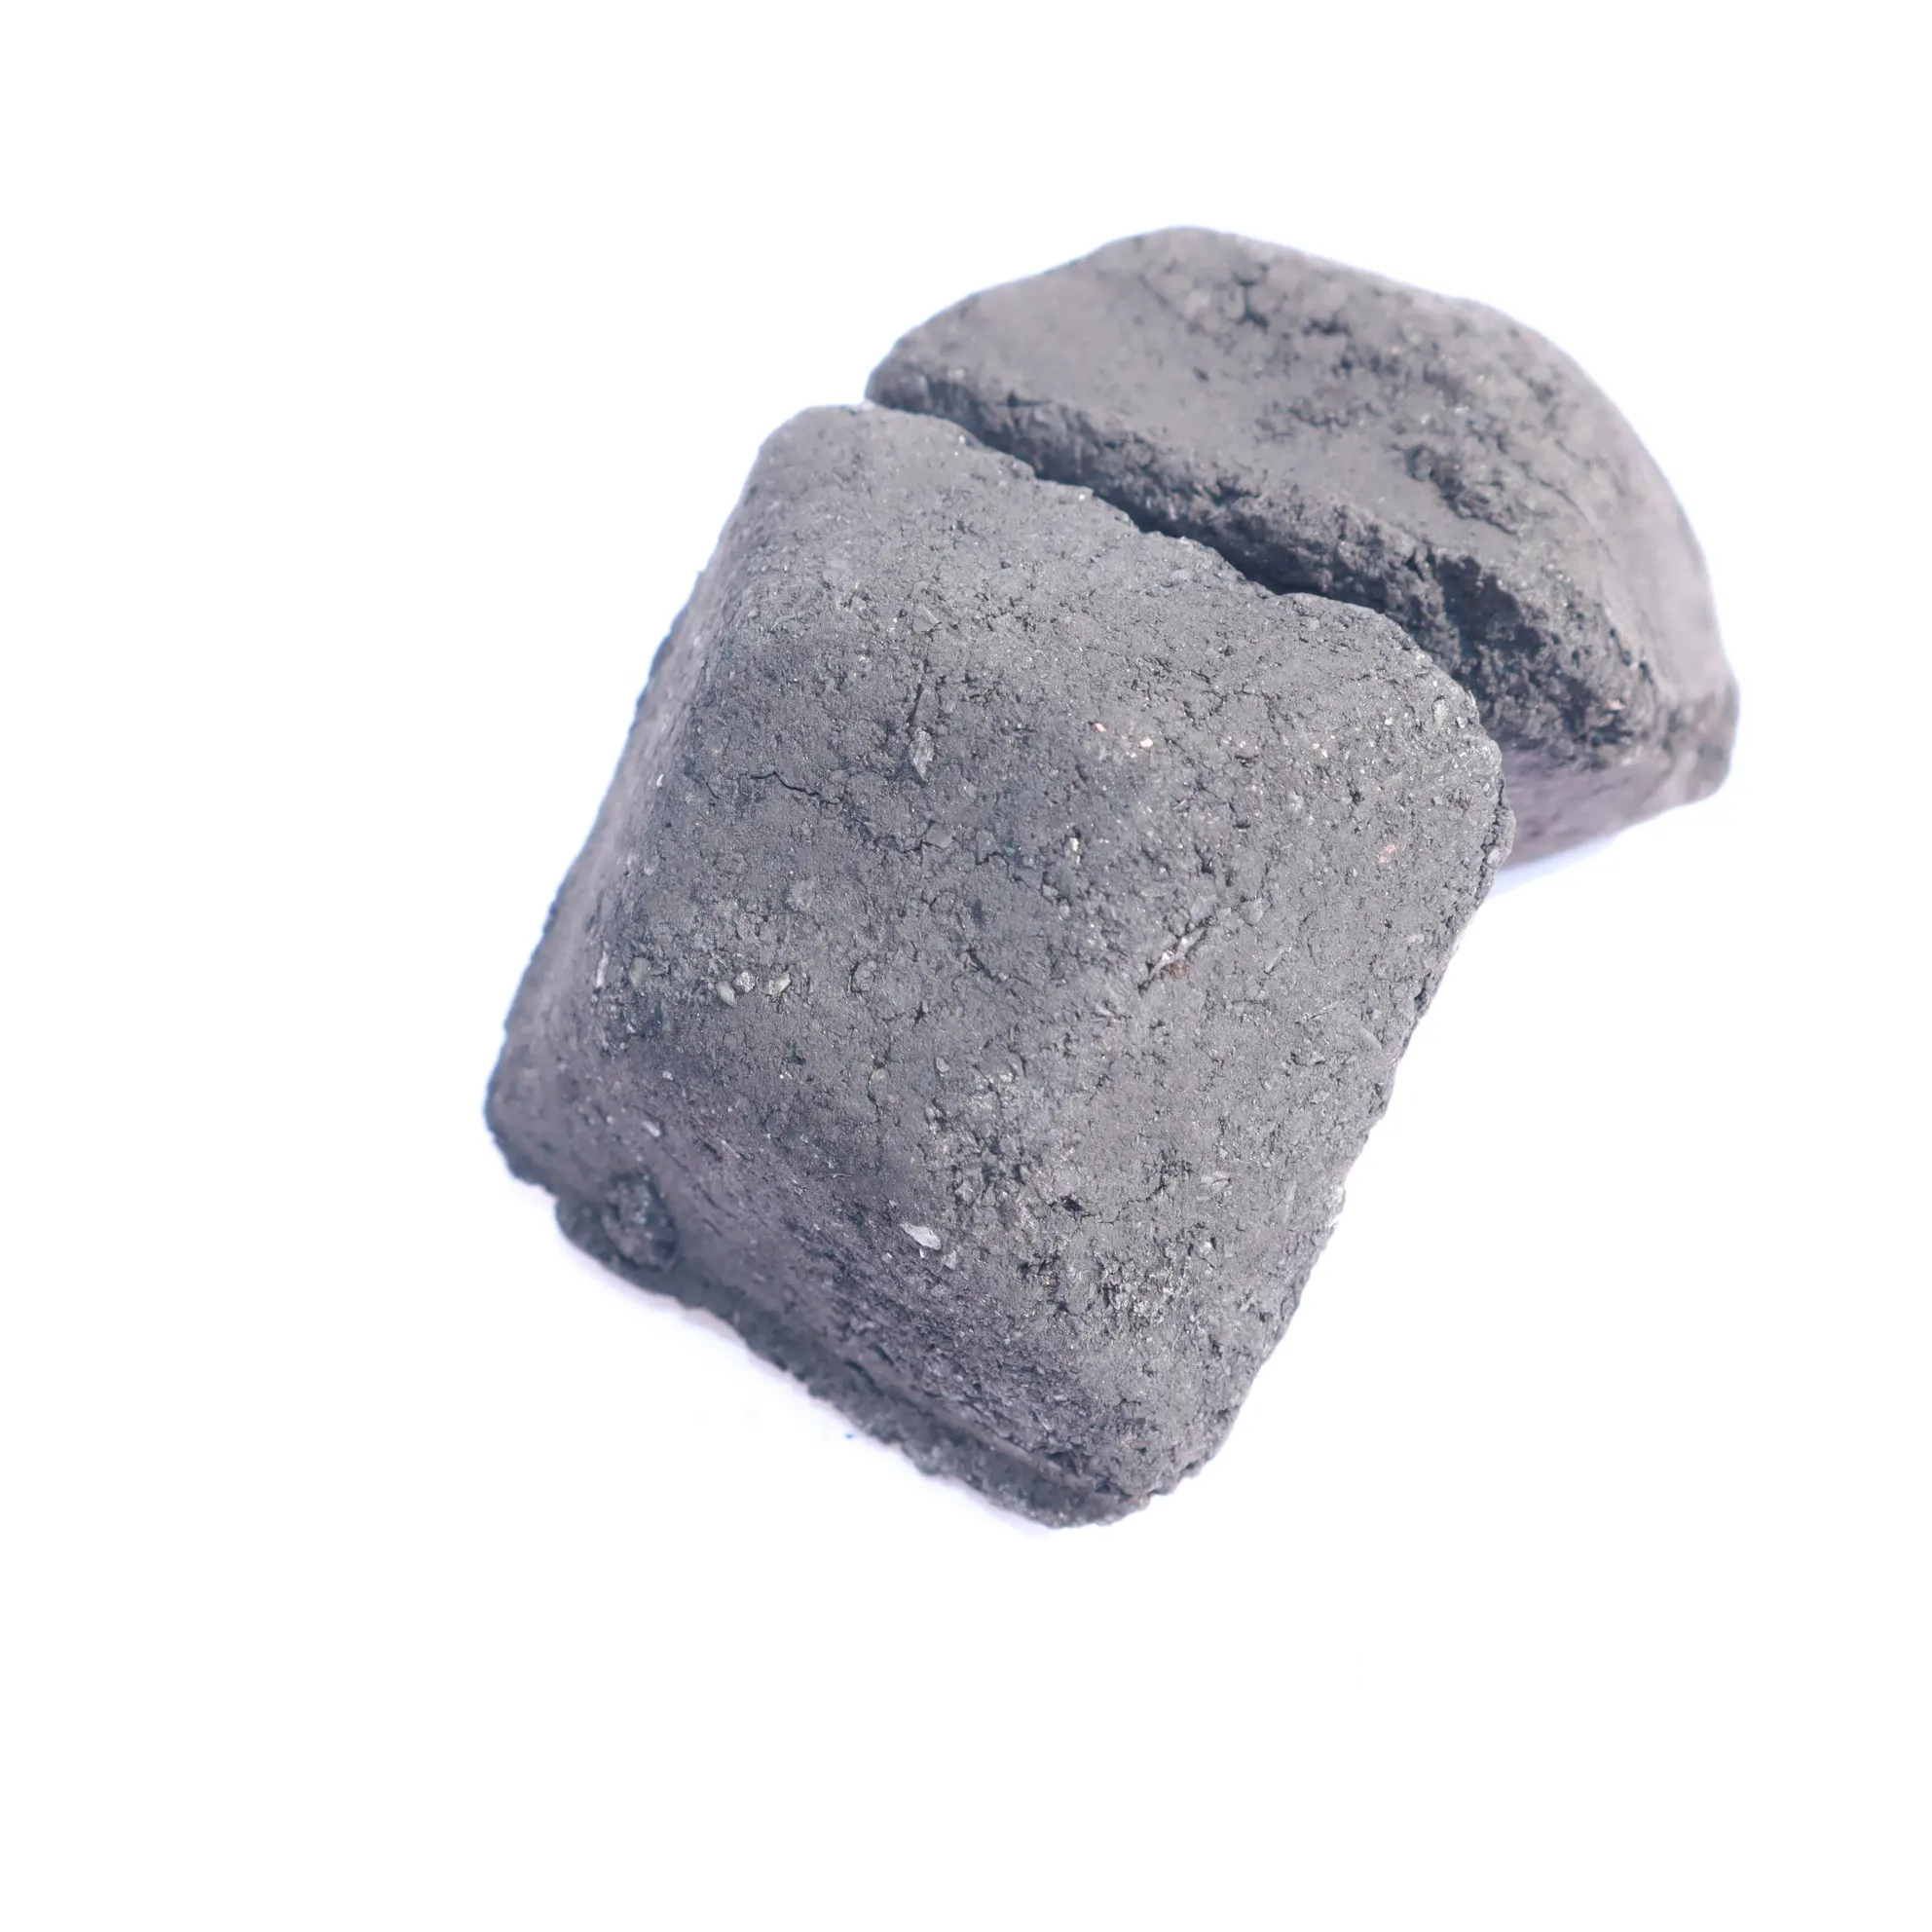 Ventes de fin de mois Aucune teneur en lignine ajoutée dans les briquettes de charbon de coco 100% Aucun effet secondaire pour les grillades et les BBQ